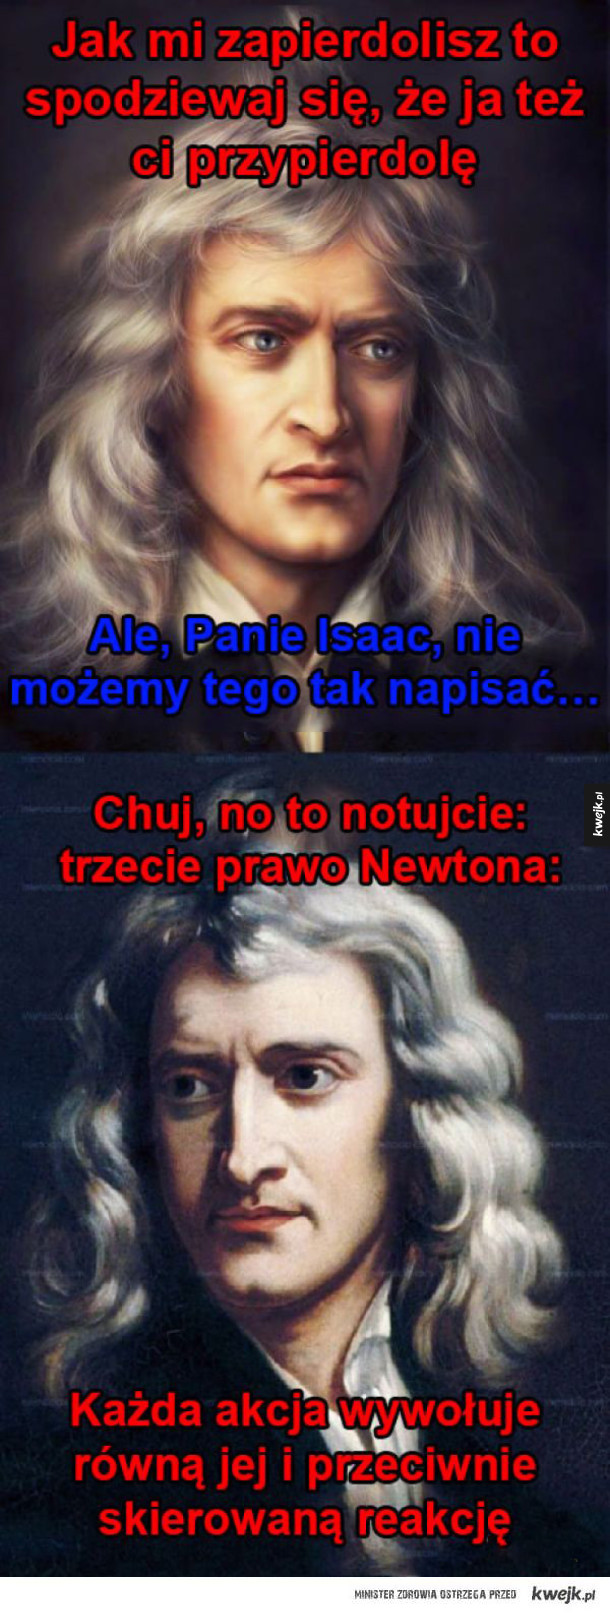 Tak powstało Trzecie Prawo Newtona